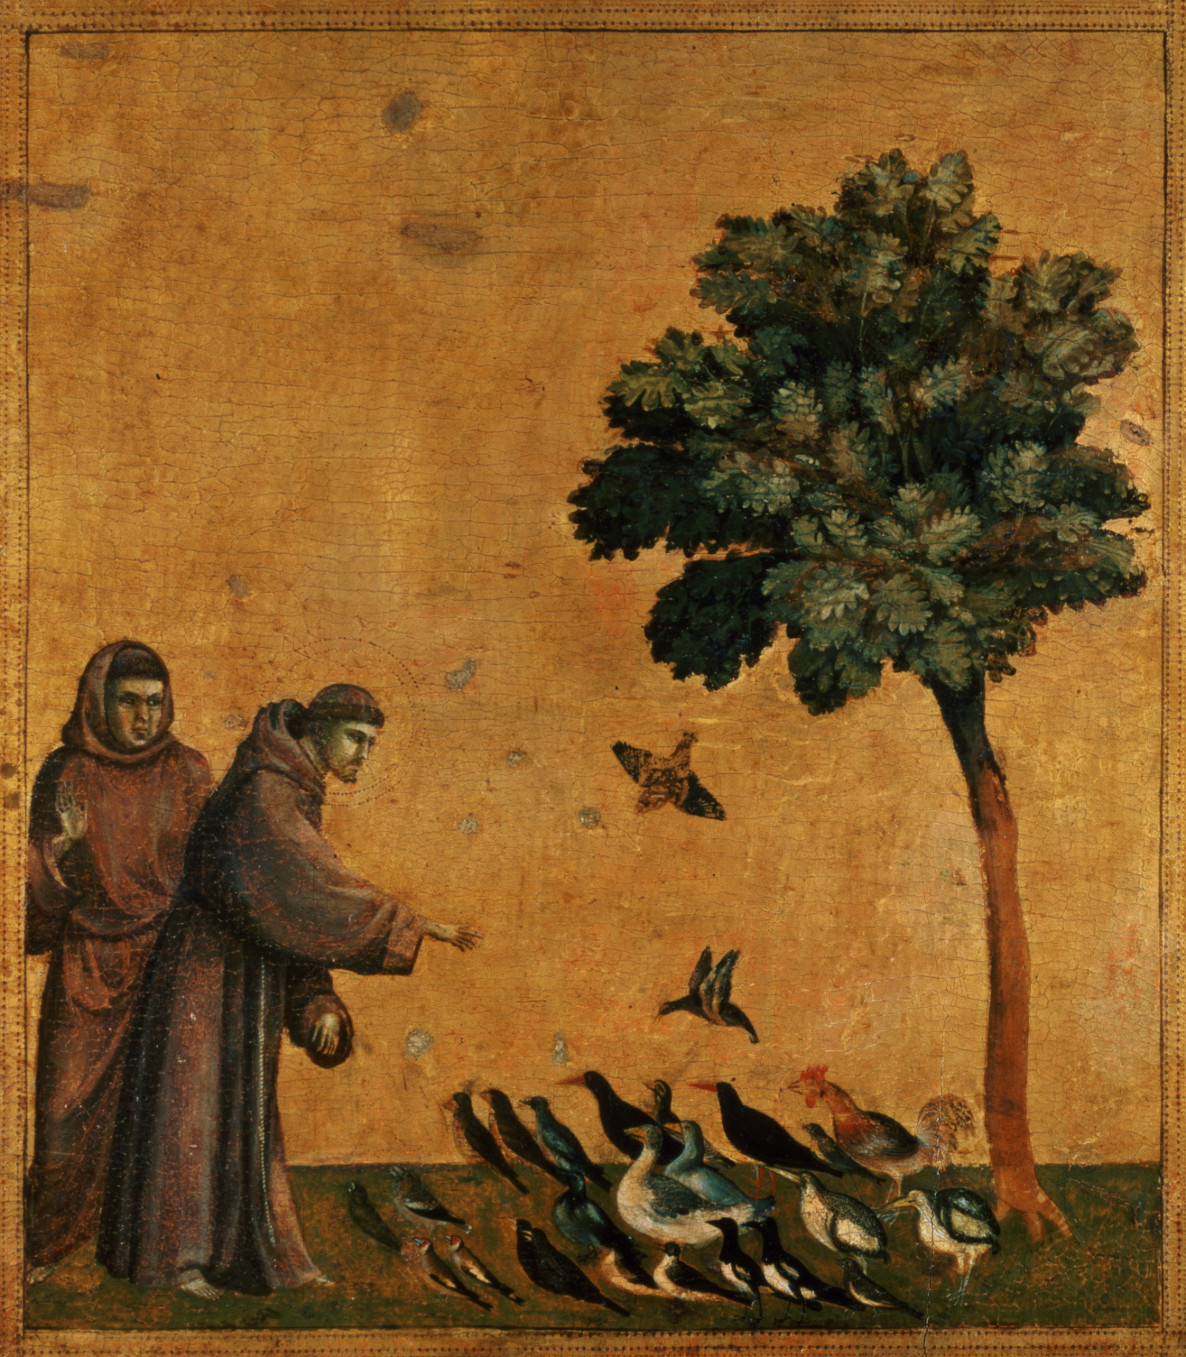 San-Francesco-predica-agli-uccelli-giotto-analisi.jpg